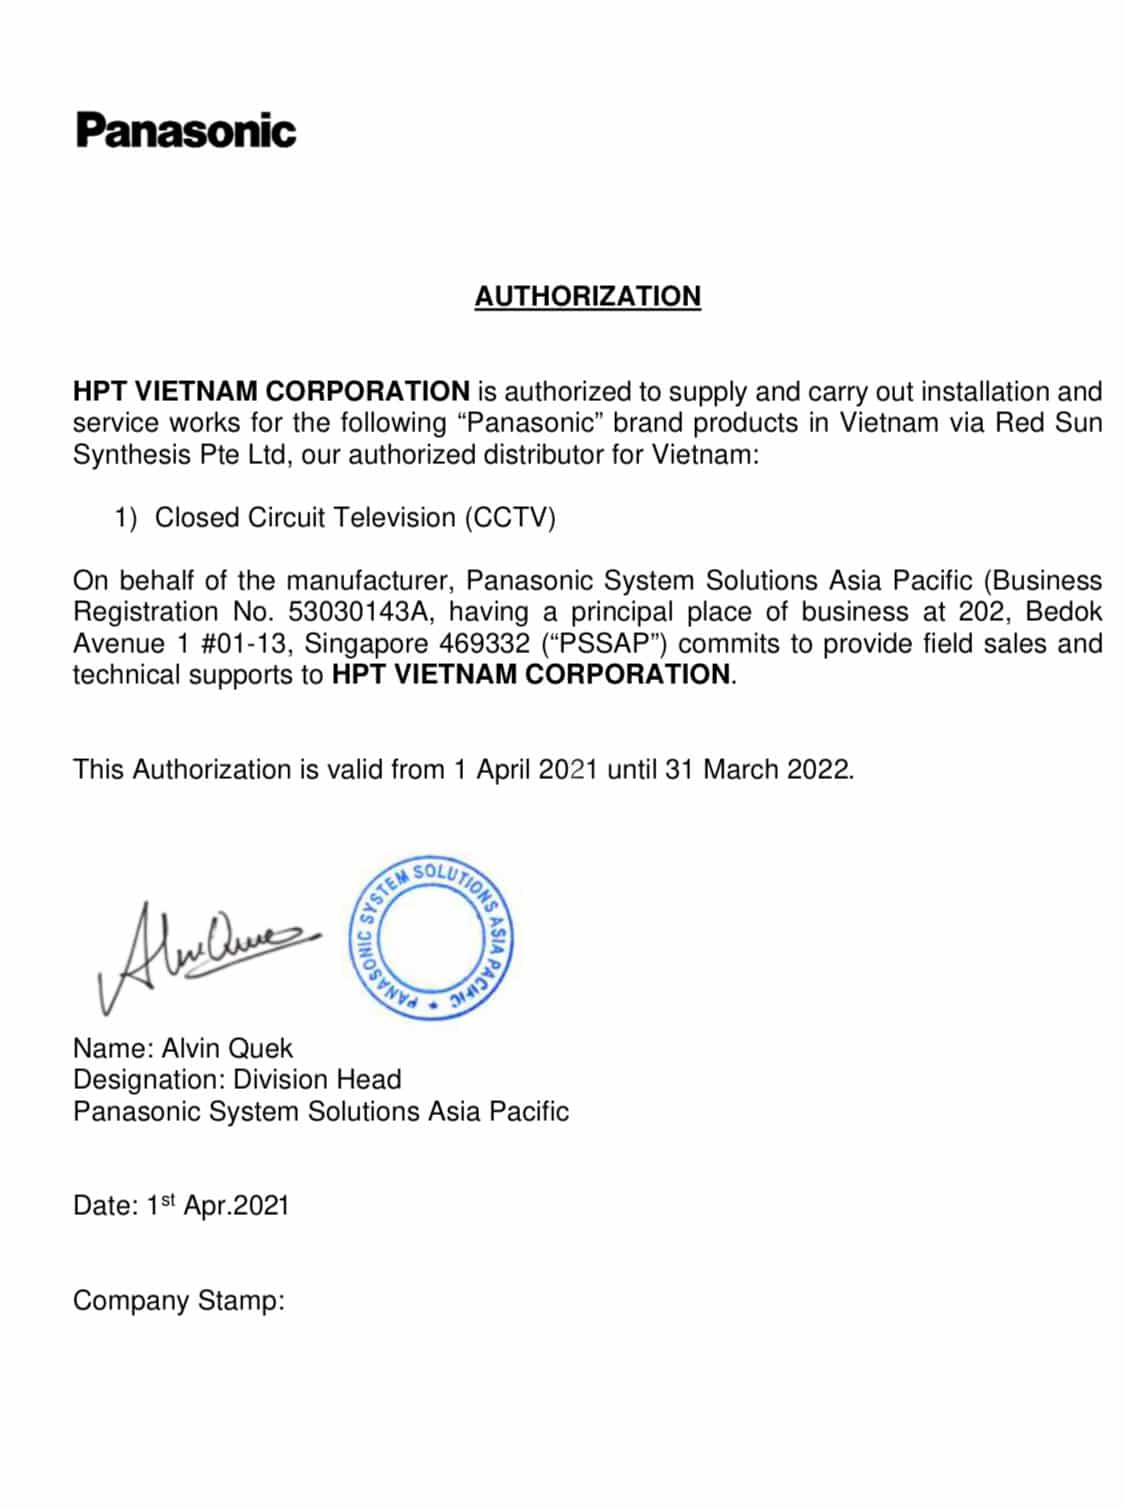 Chứng nhận nhập khẩu và phân phối độc quyền Panasonic - HPT Việt Nam